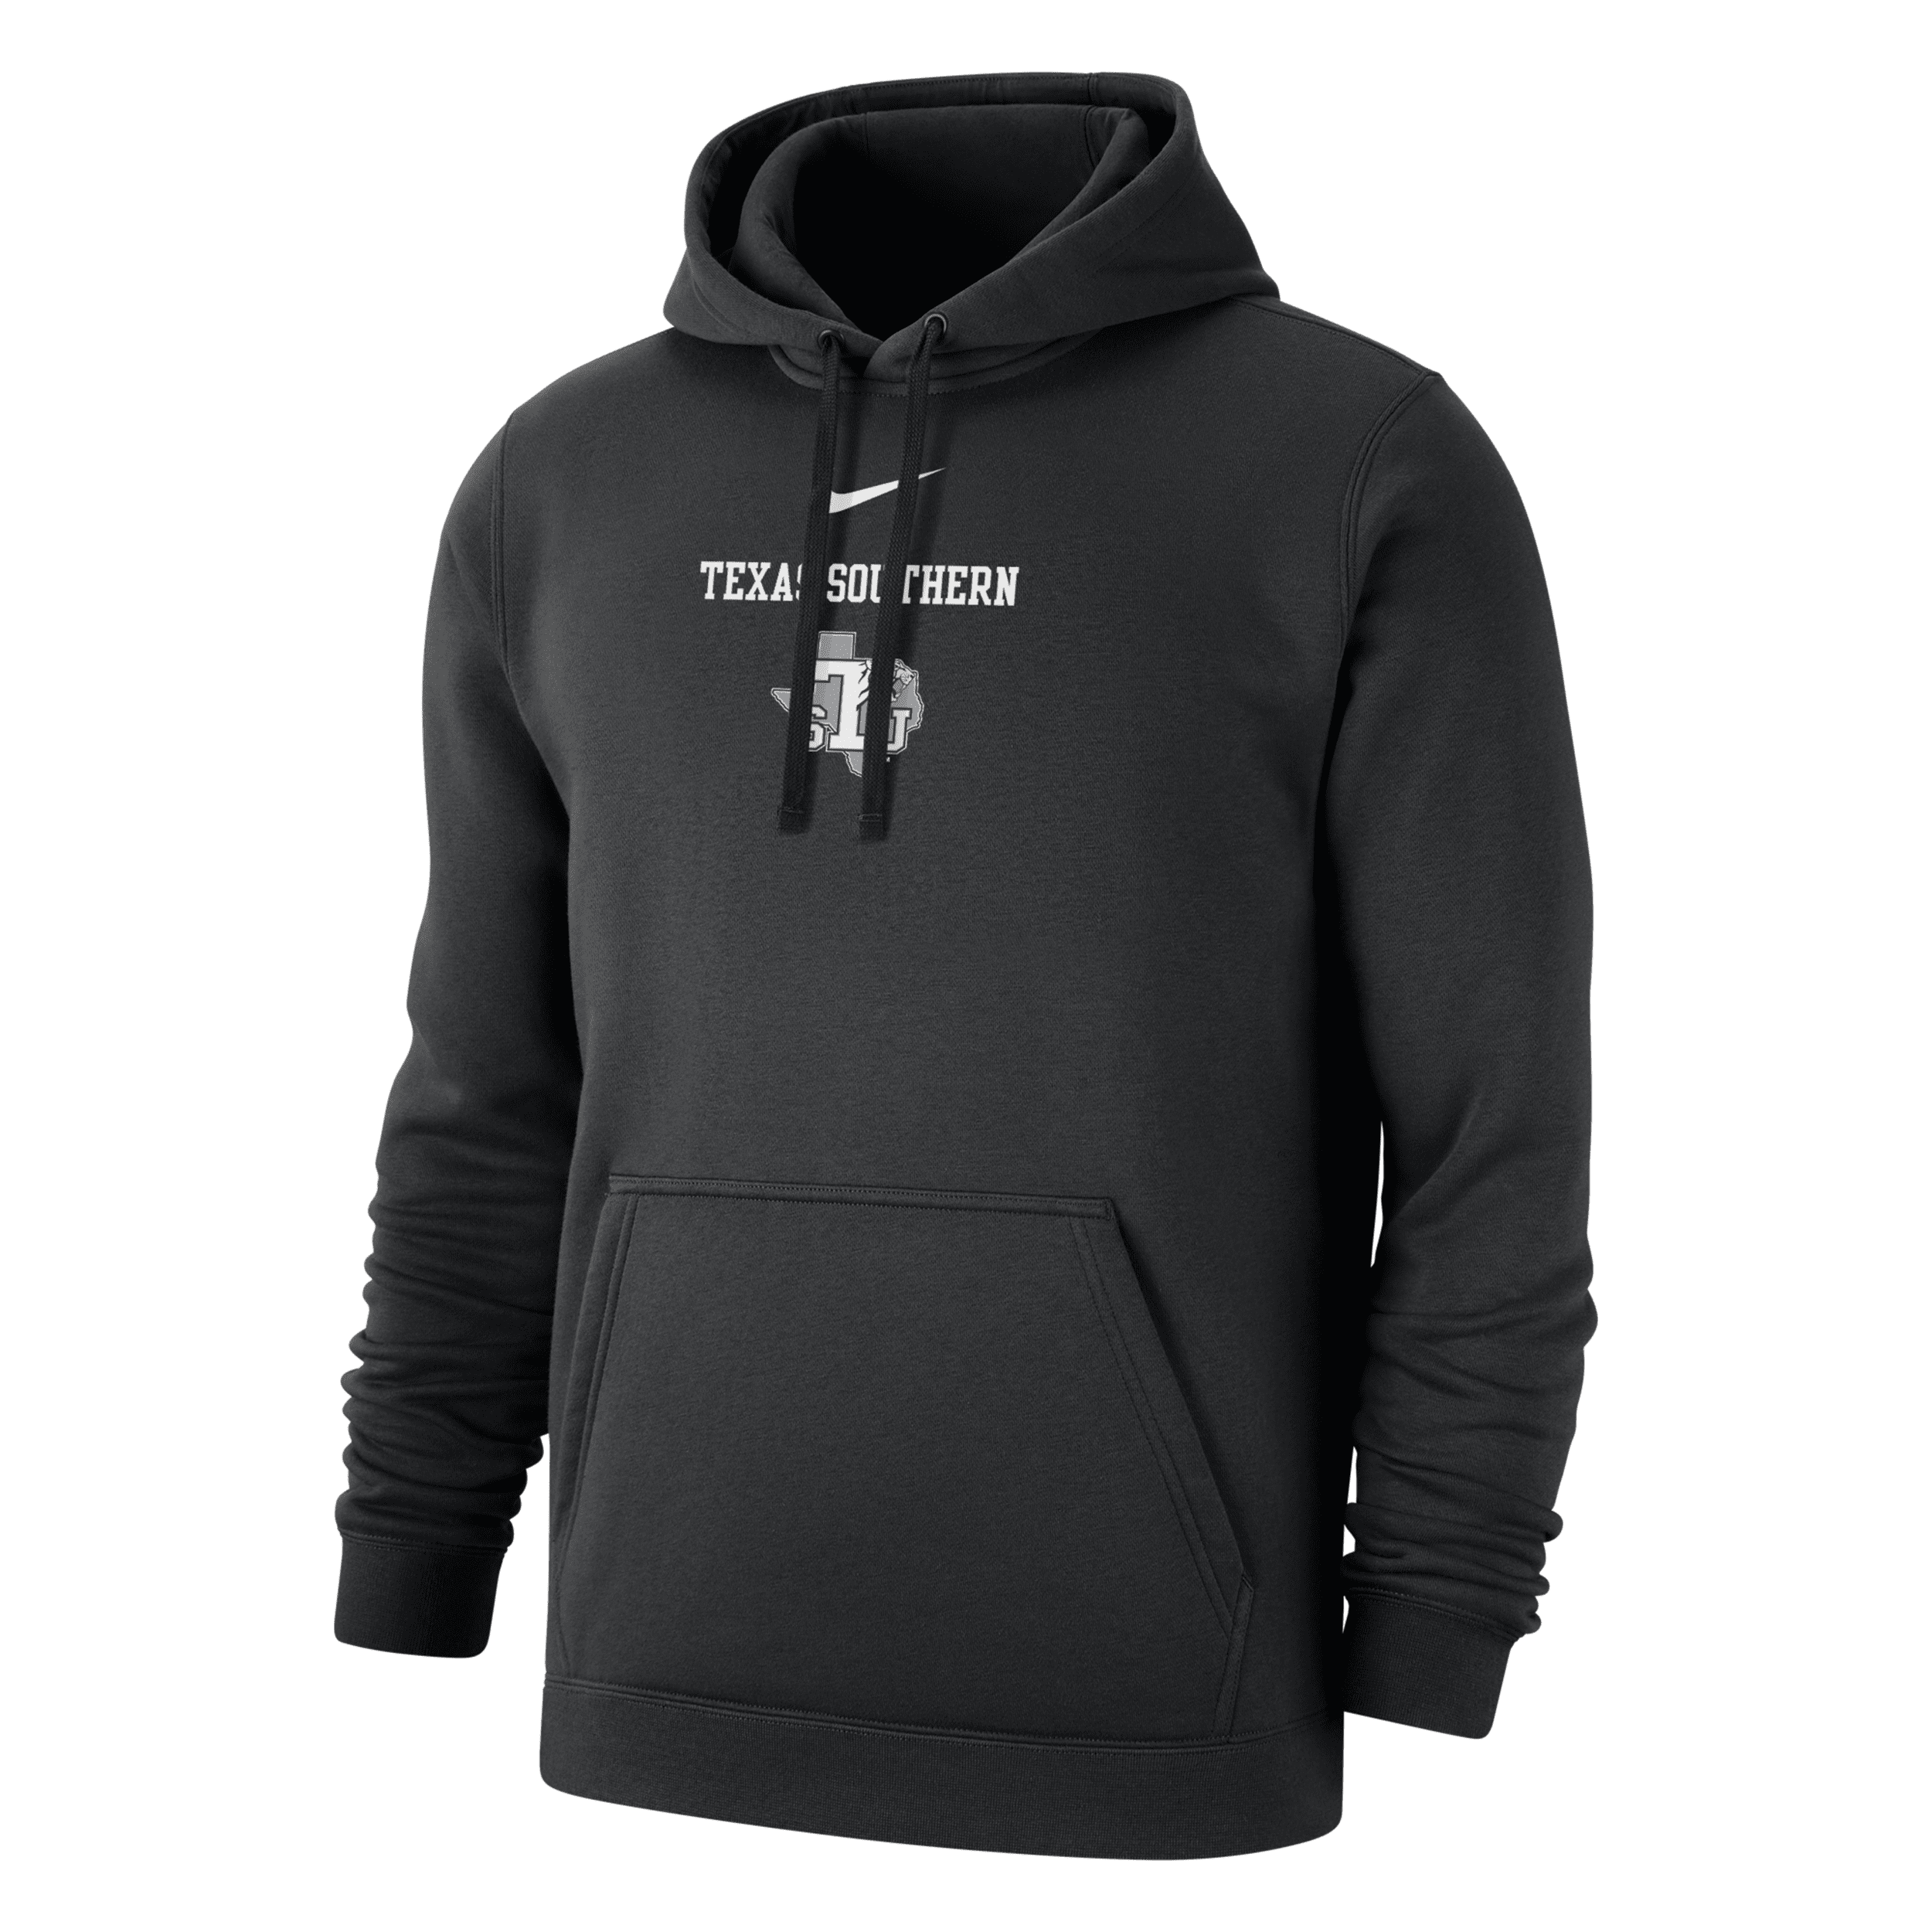 Nike Texas Southern Club Fleece  Men's College Hoodie In Black